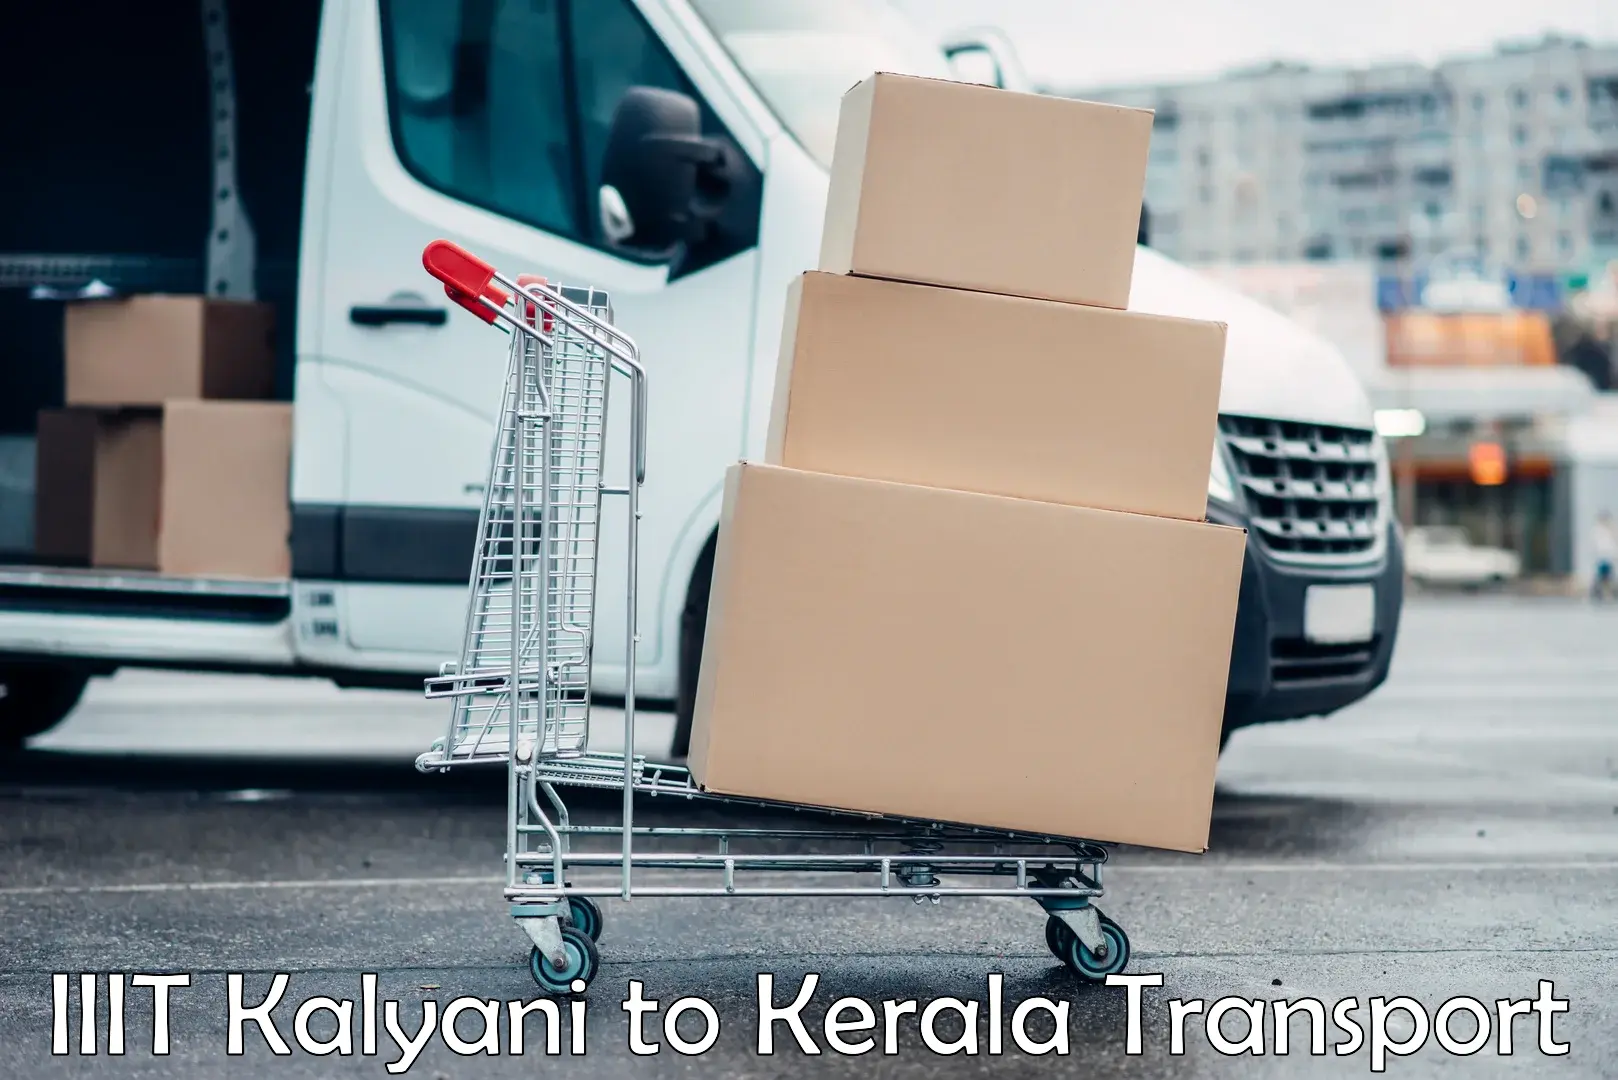 Nearby transport service IIIT Kalyani to Narikkuni